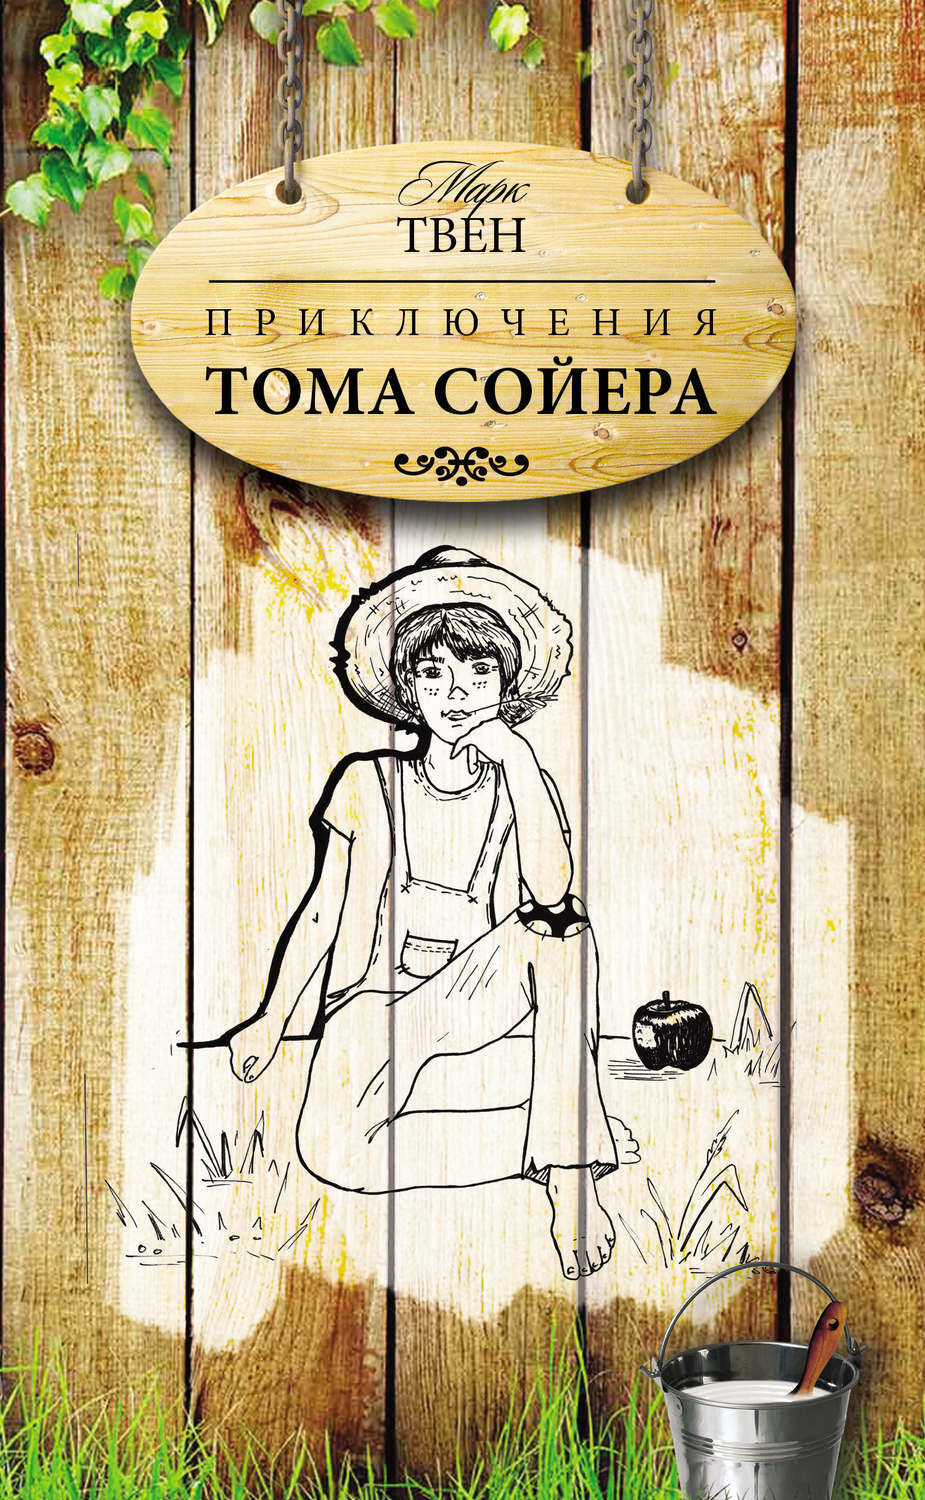 Приключения марка Тома Сойера обложка книги. Марка Твена приключения Тома Сойера. Книга приключения Тома Сойера.